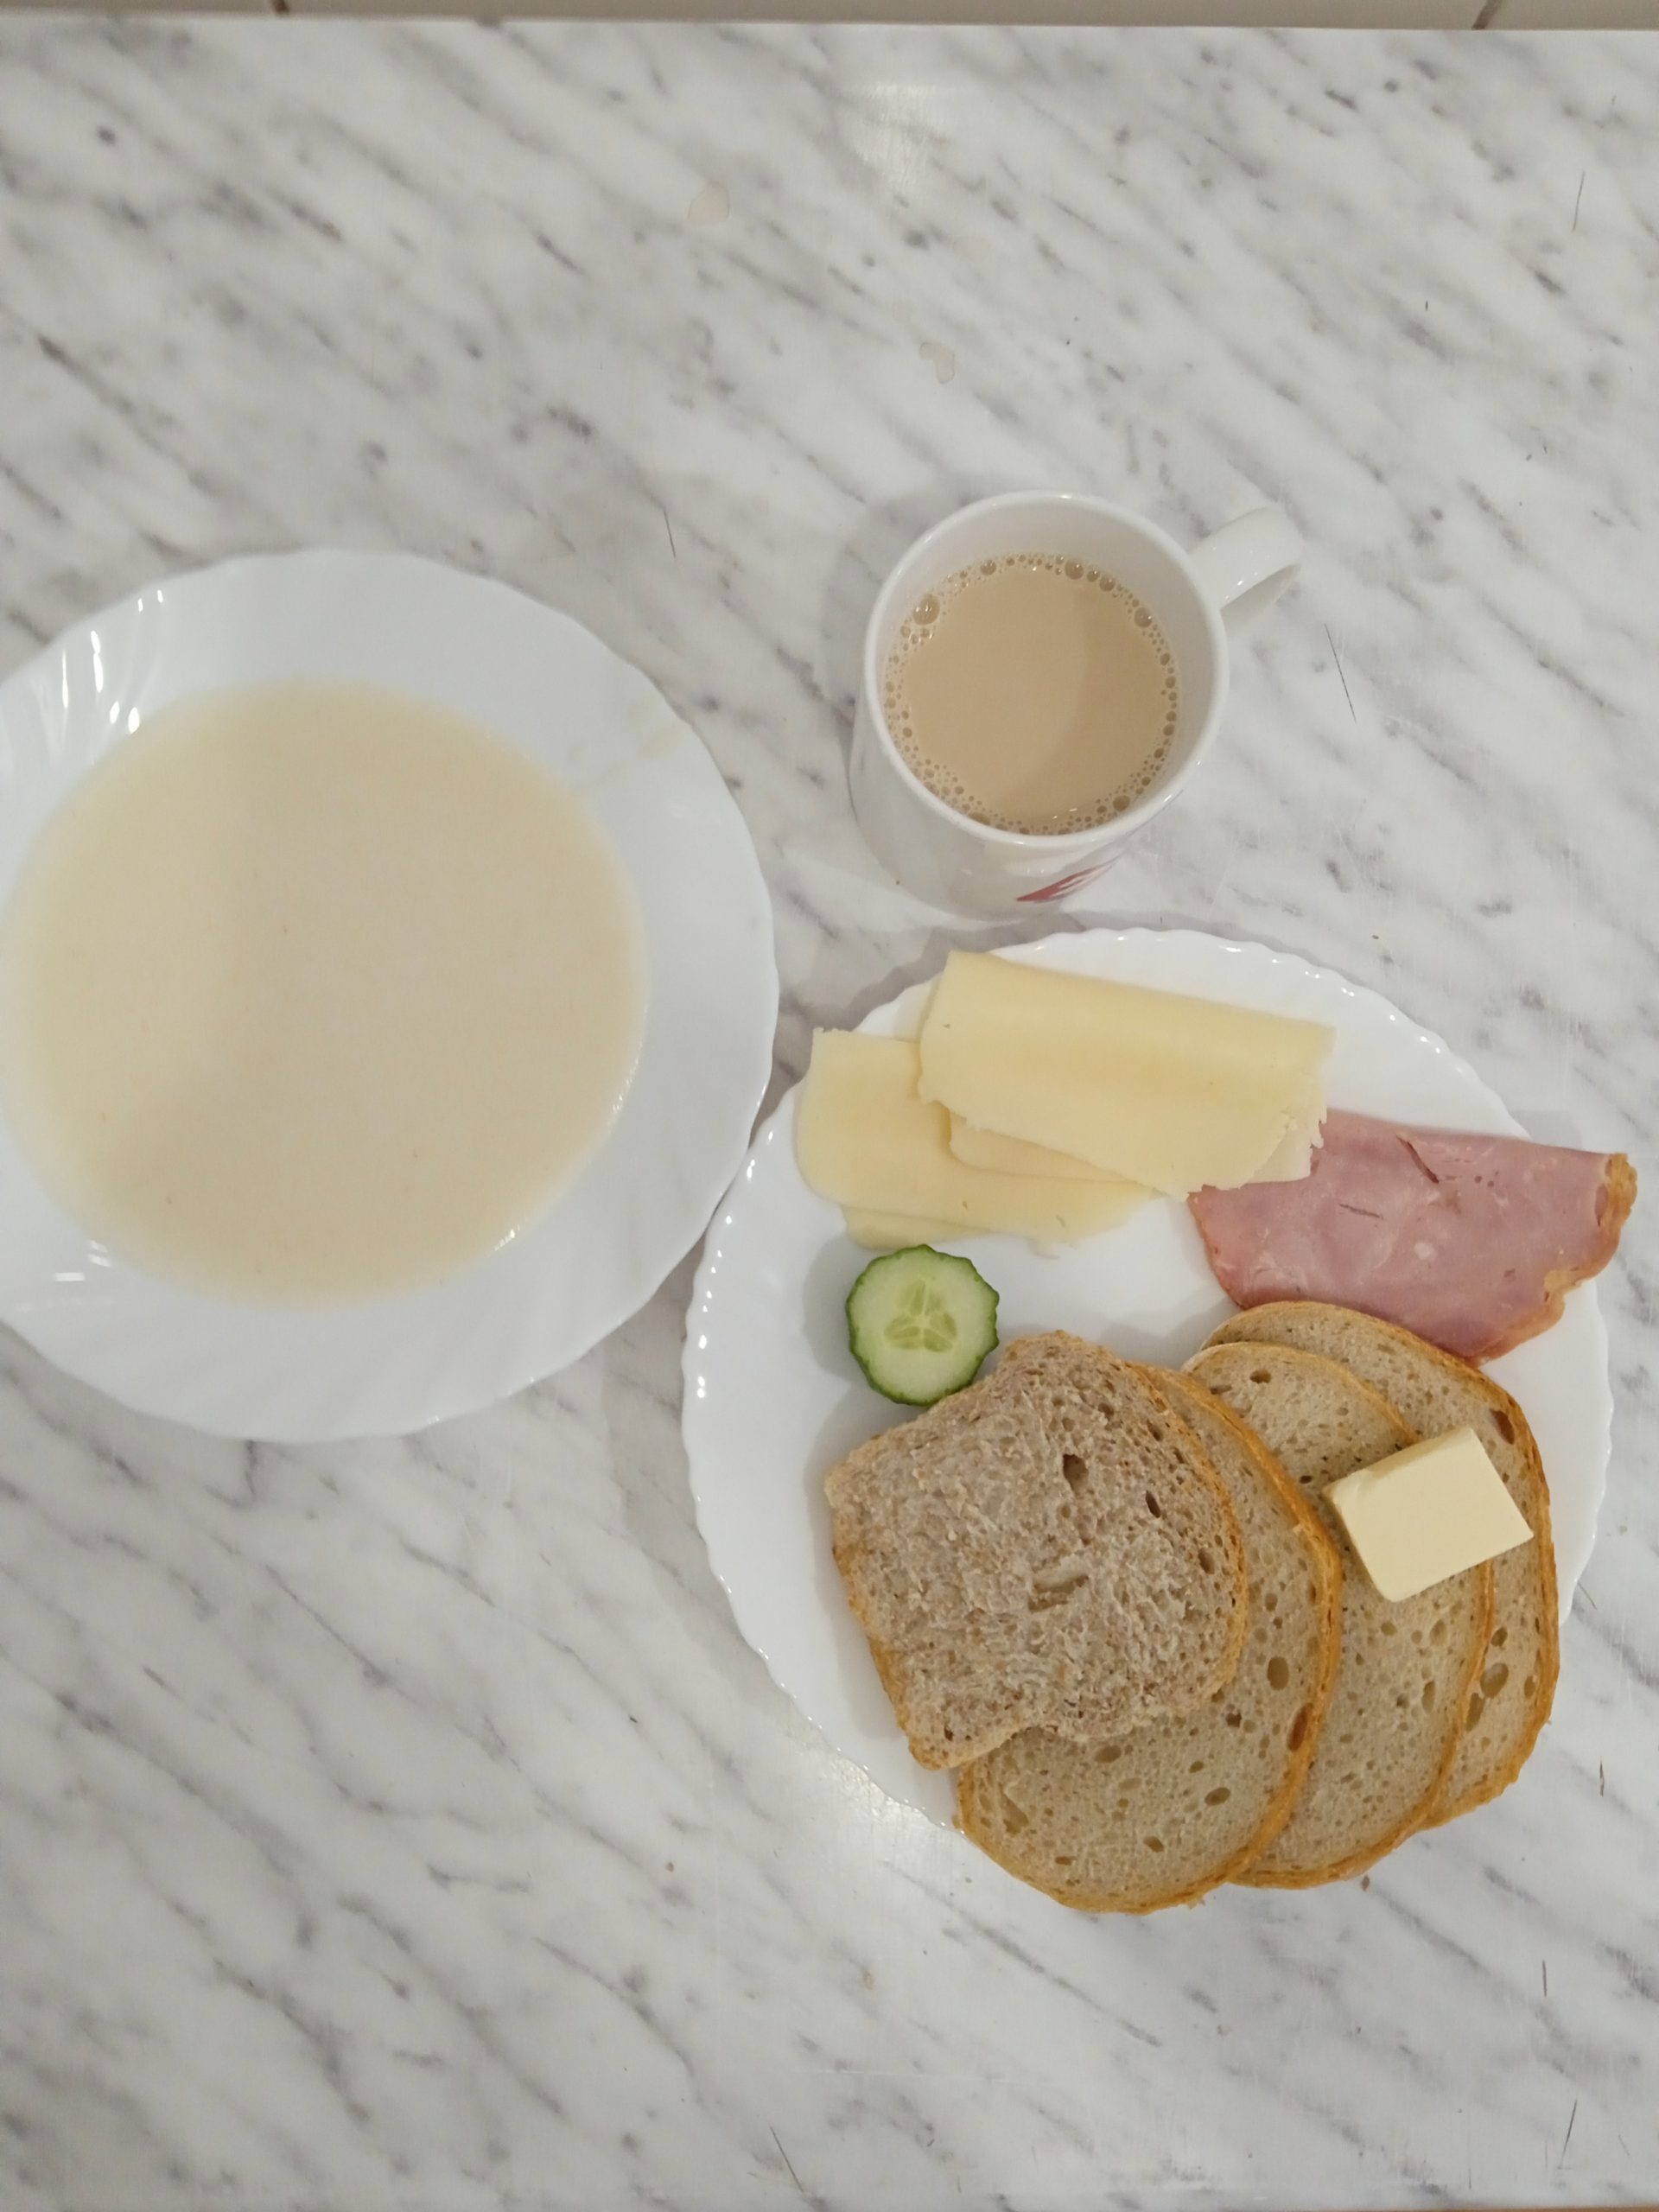 zdjęcie przedstawia śniadanie złożone z zupy mlecznej, trzech kromek chleba, masła, dwóch plastrów sera żółtego i szynki, oraz ogórka zielonego. Posiłki ułożone na dwóch białych talerzach. Powyżej talezy kubek z kawą zbożową. 